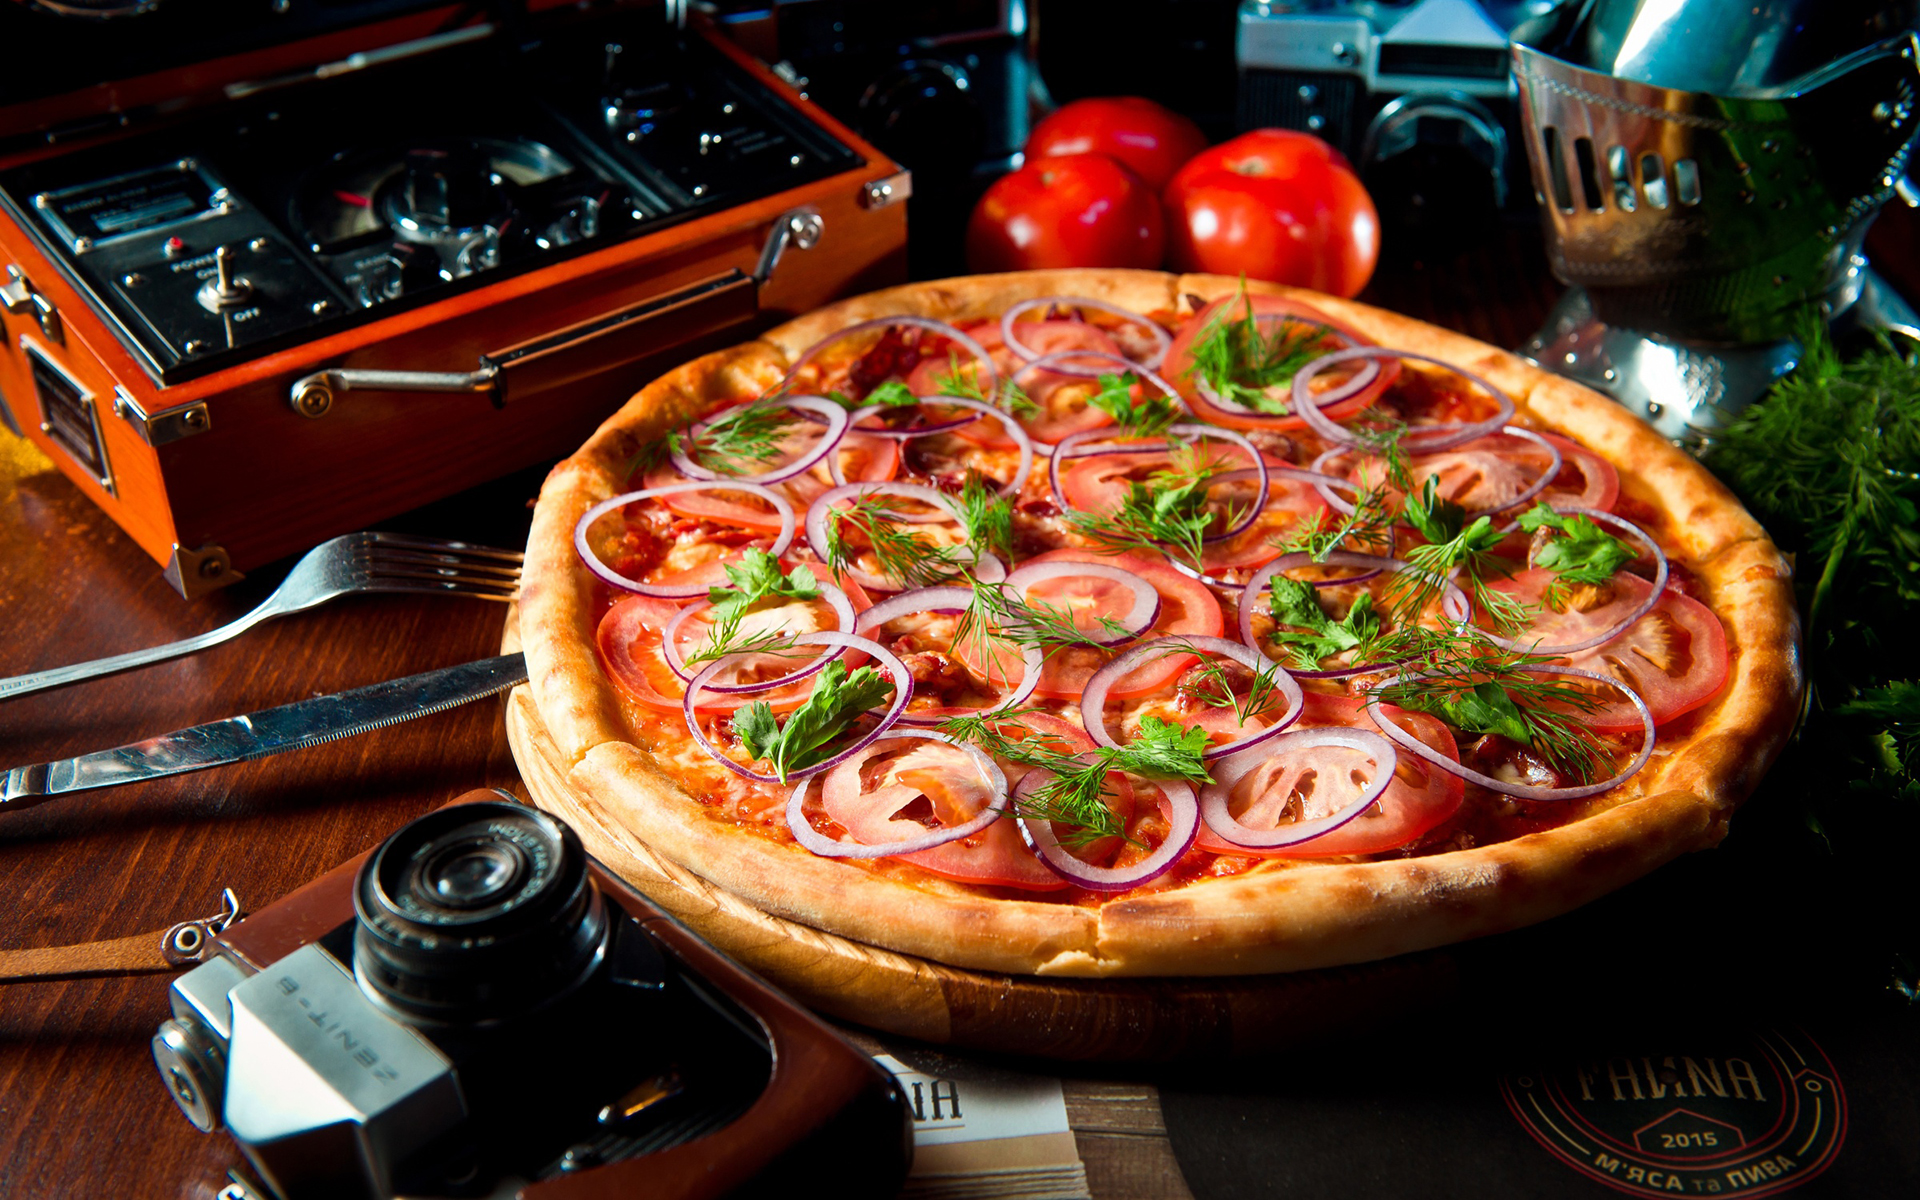 Descarga gratuita de fondo de pantalla para móvil de Pizza, Tomate, Cebolla, Alimento.